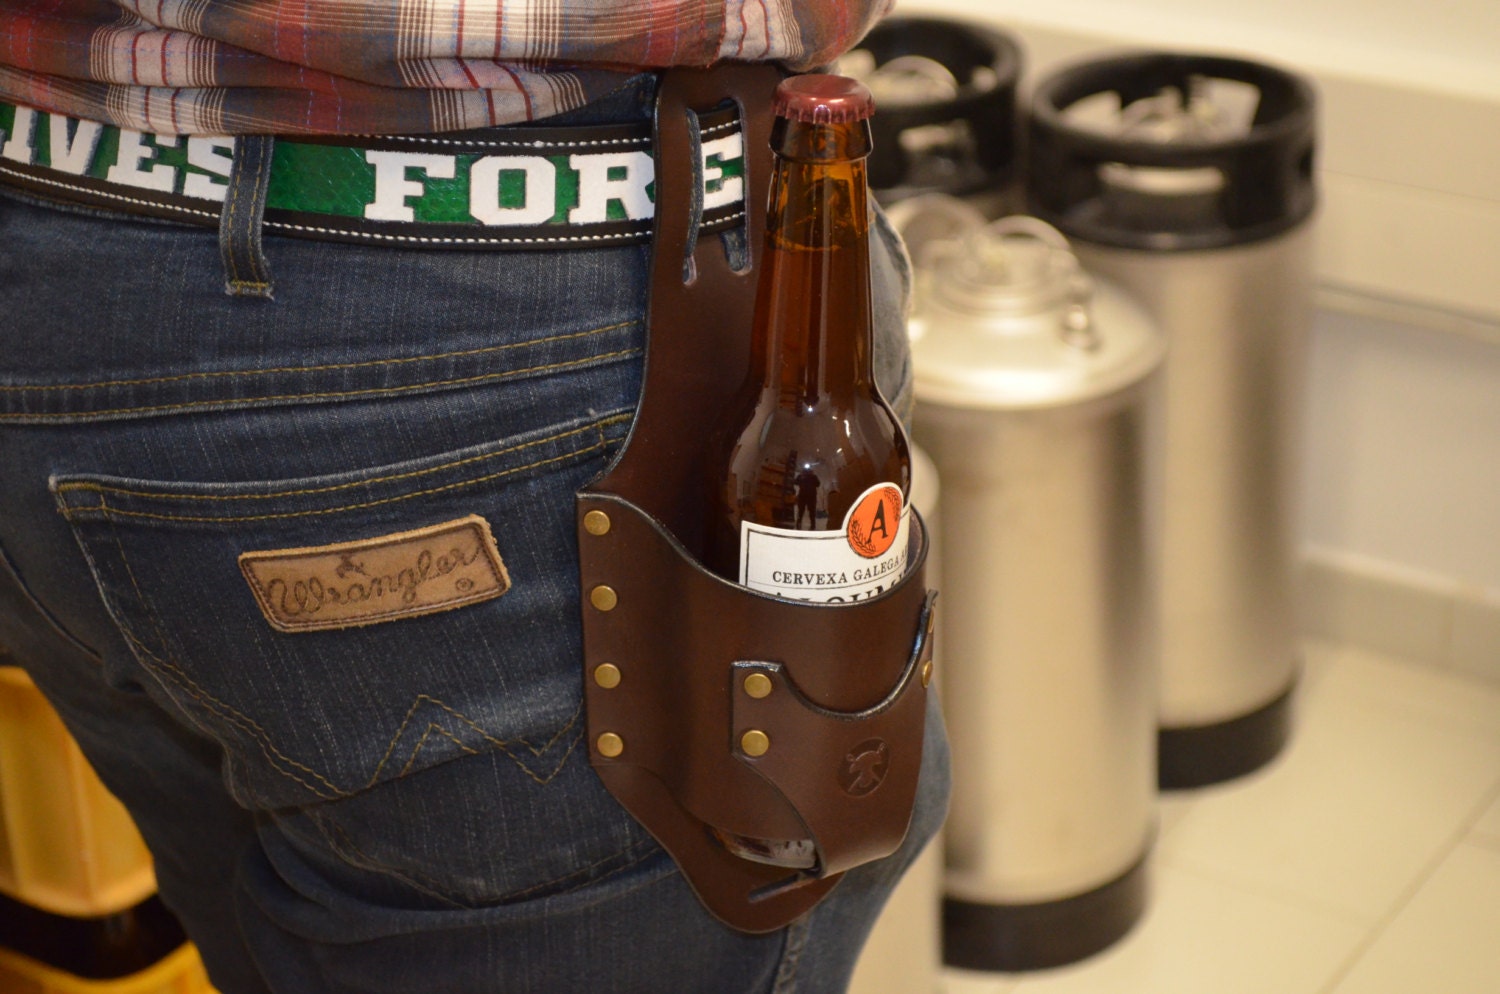 Leder Bier holster, klassische Bier Holster Bierhalter, Cowboy Bier Holster  Flasche Holster Taillengürtel für Mann